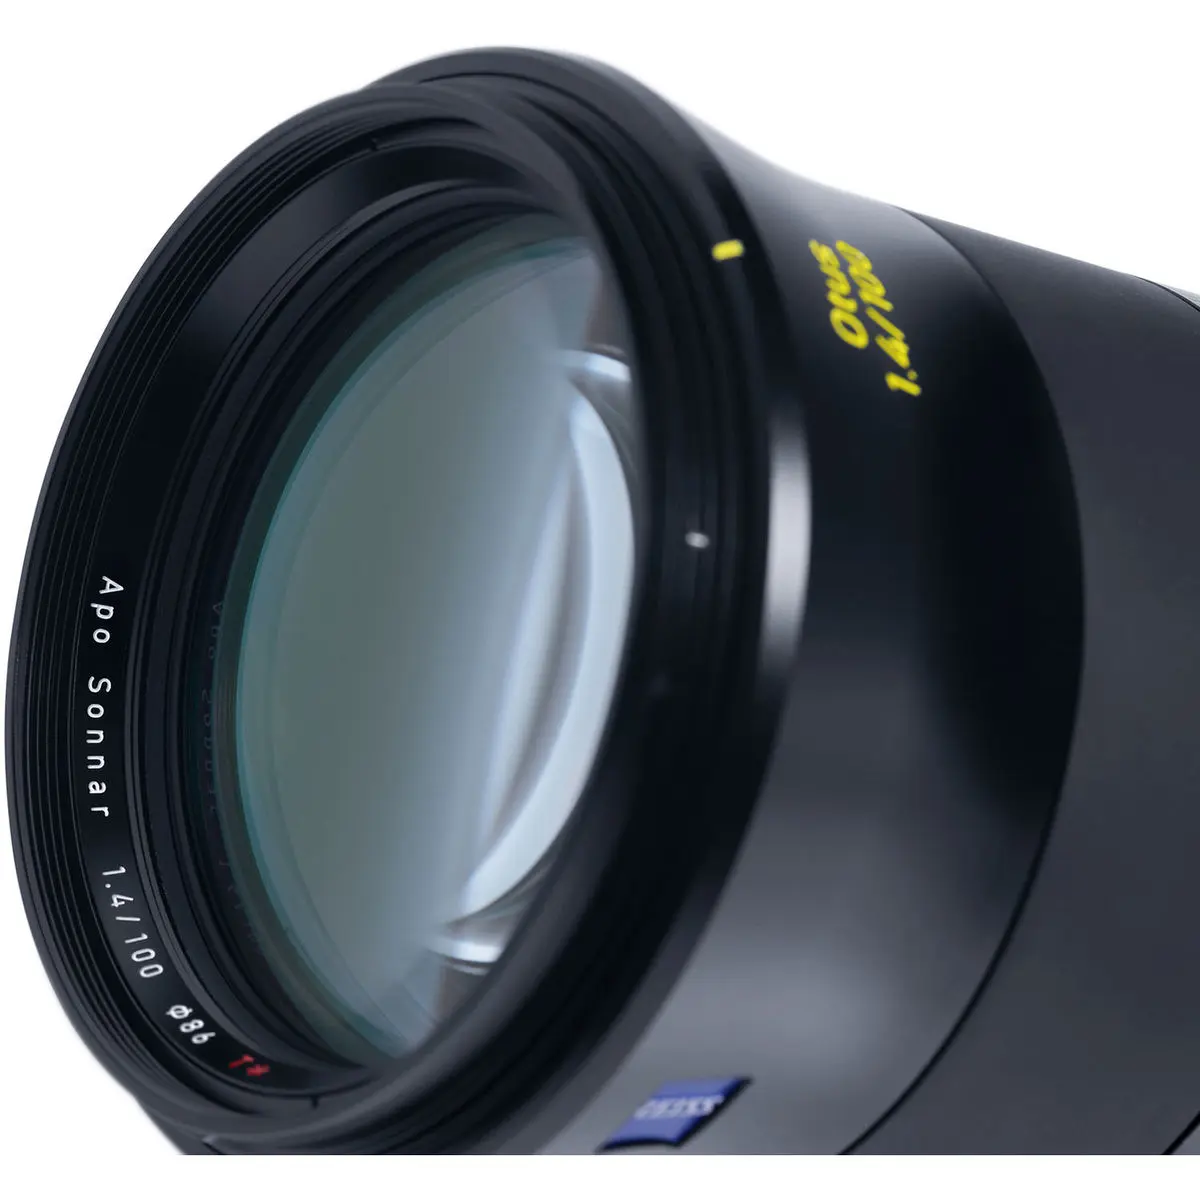 12. Carl Zeiss Otus 1.4/100 ZE (Canon) Lens